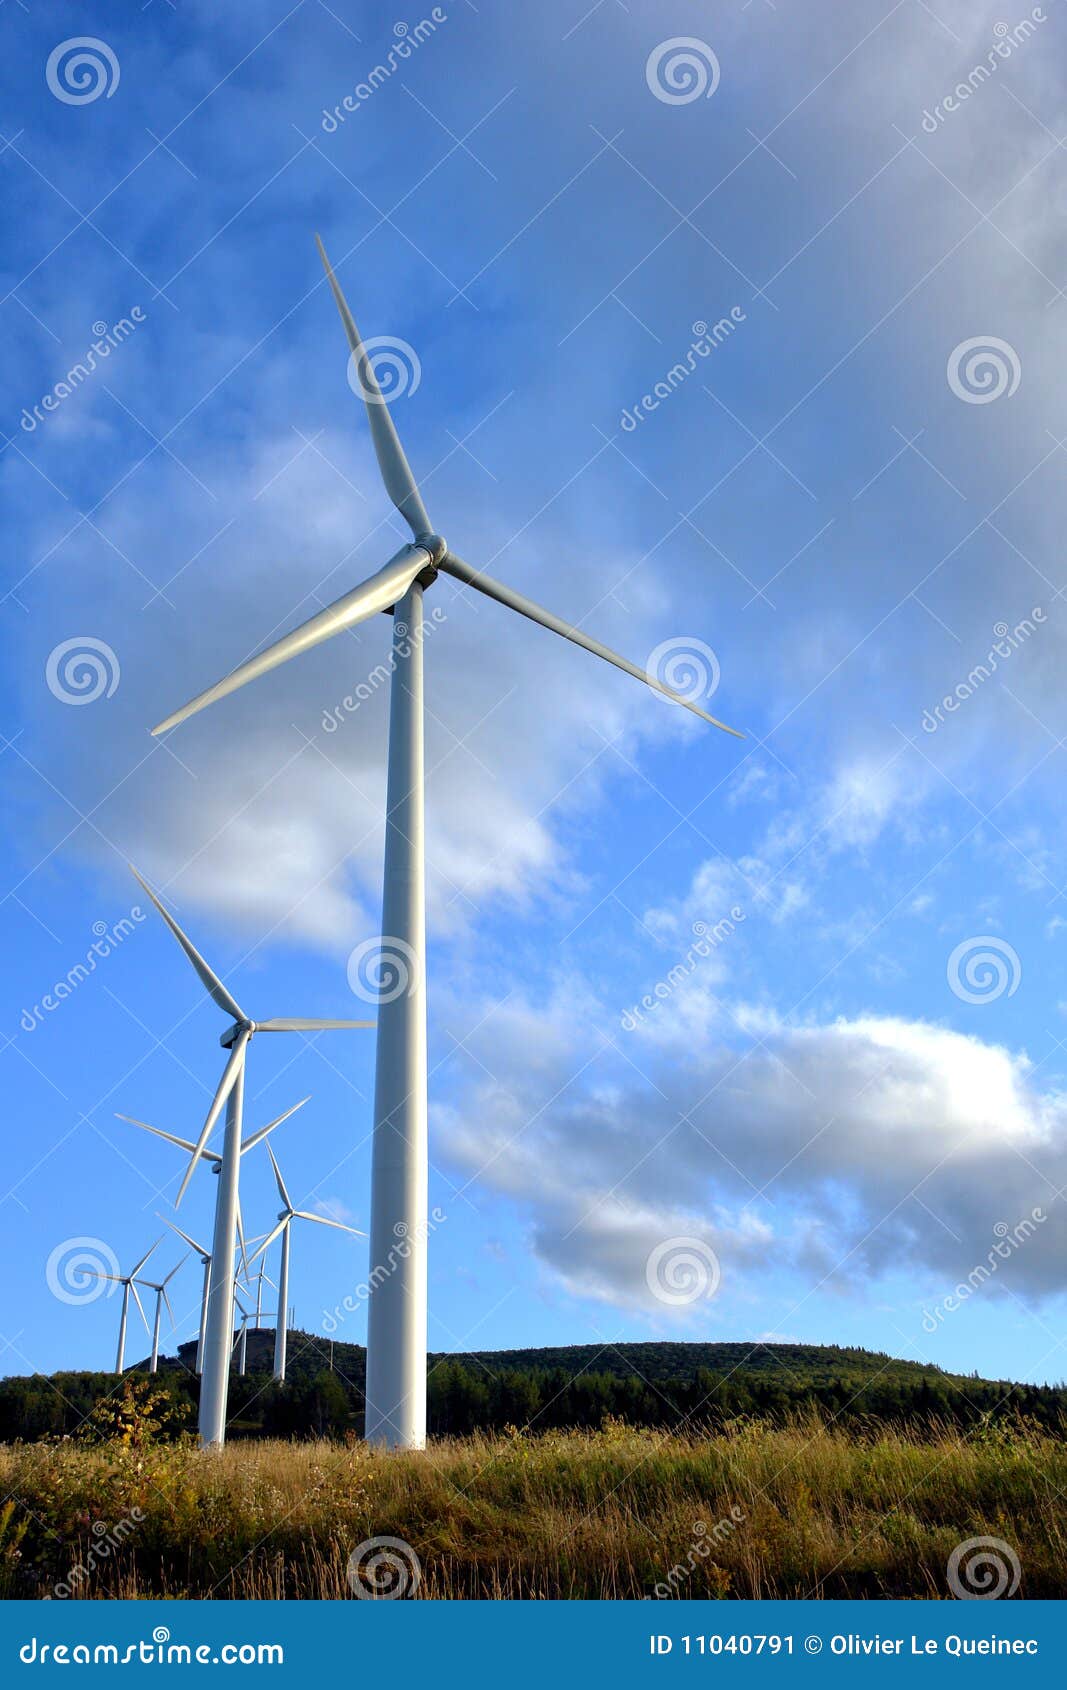 Wind Turbine Farm With Windmill Turbines Stock Image - Image: 11040791